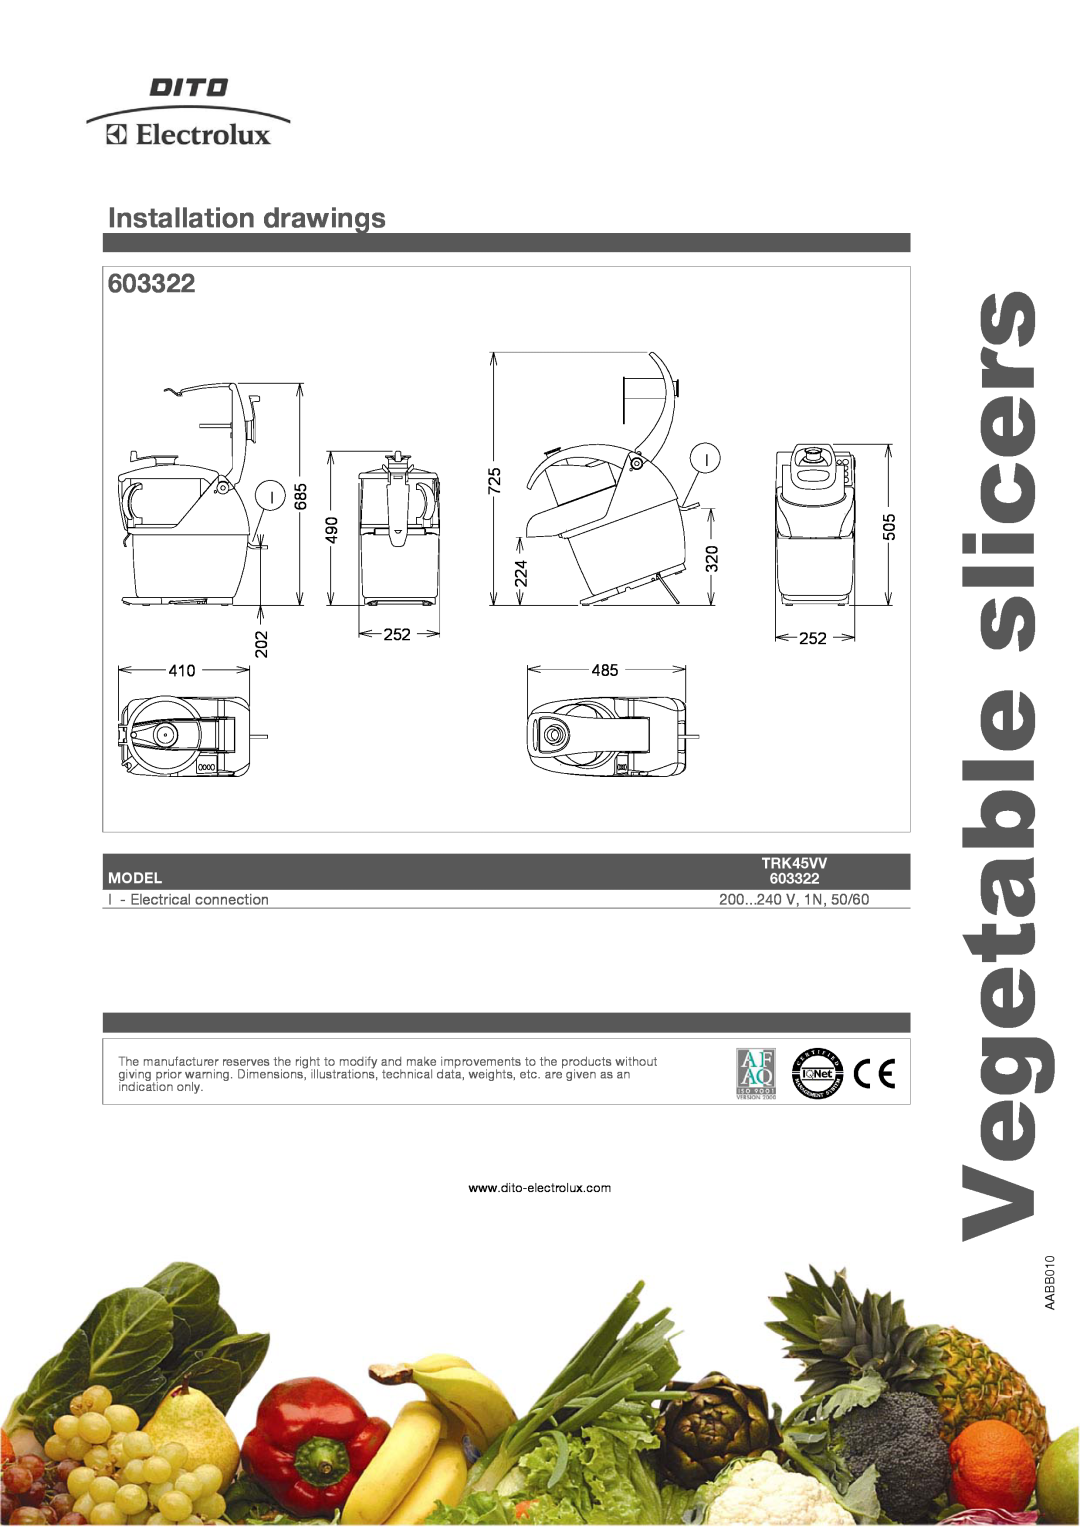 Electrolux TRK45VV slicers, Vegetable, 603322, 490 202 410, 725 224, Model, 200...240 V, 1N, 50/60, Installation drawings 